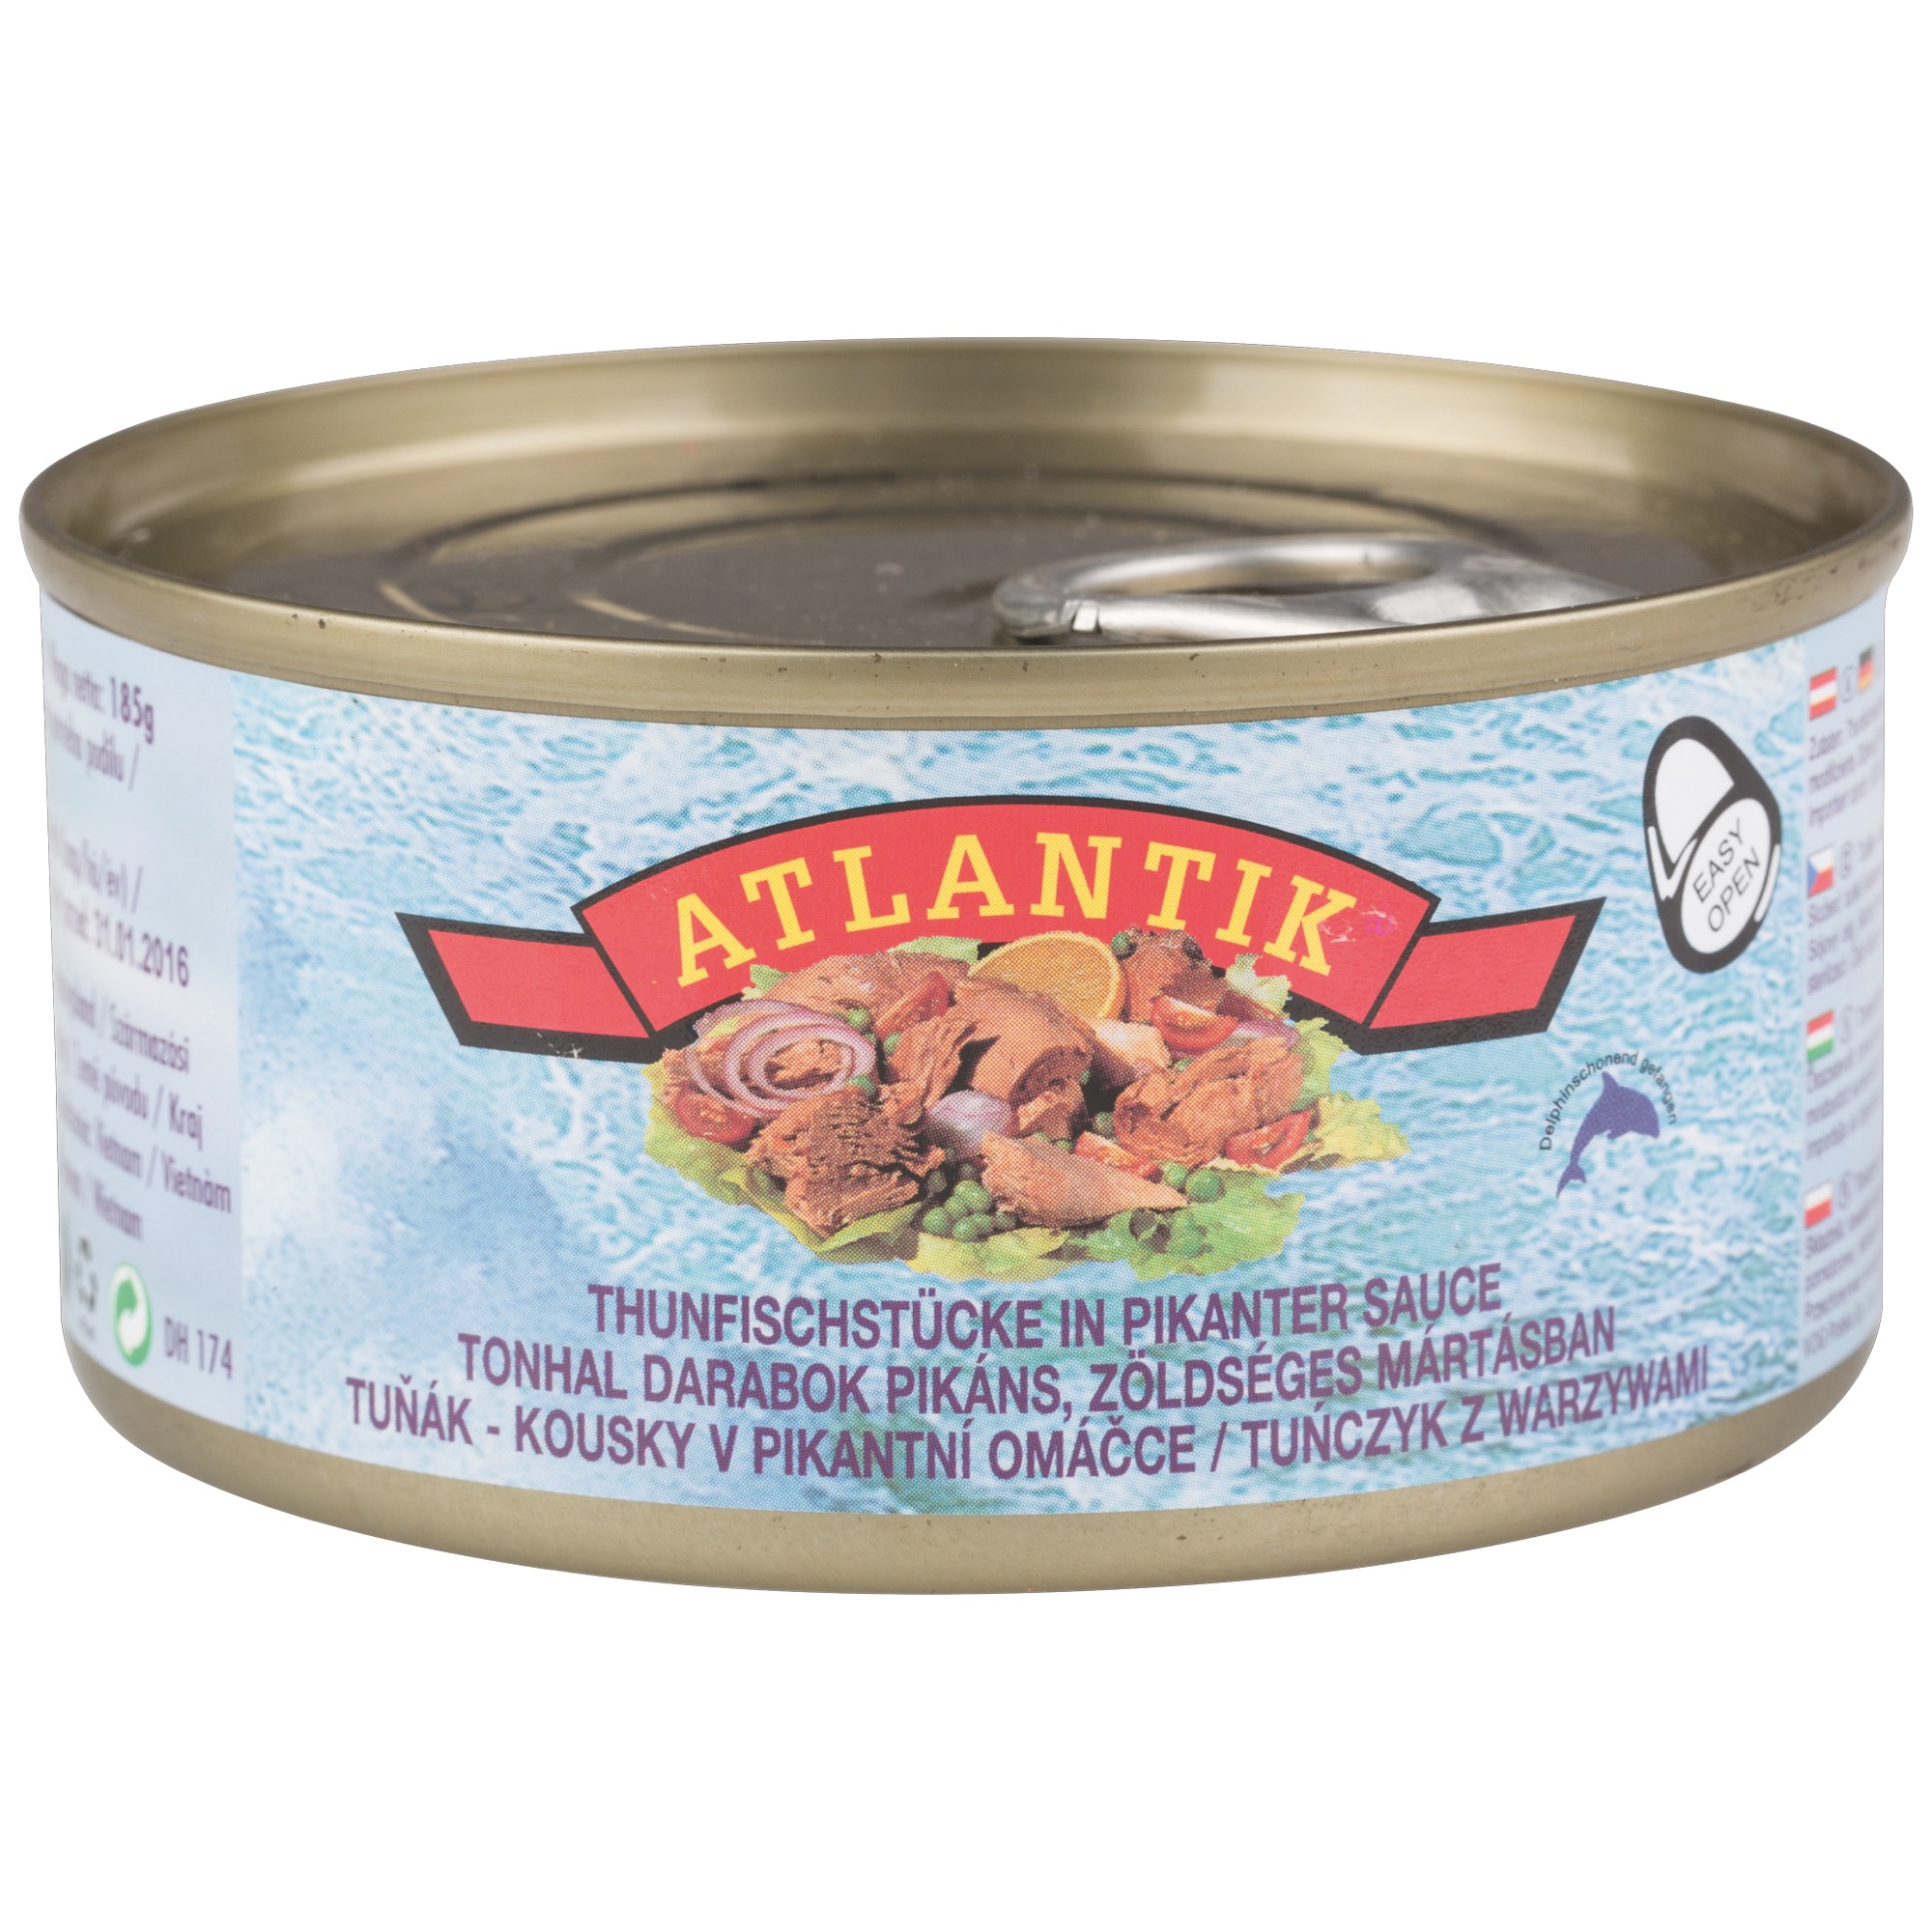 Atlantik tuniak pikantný 185g